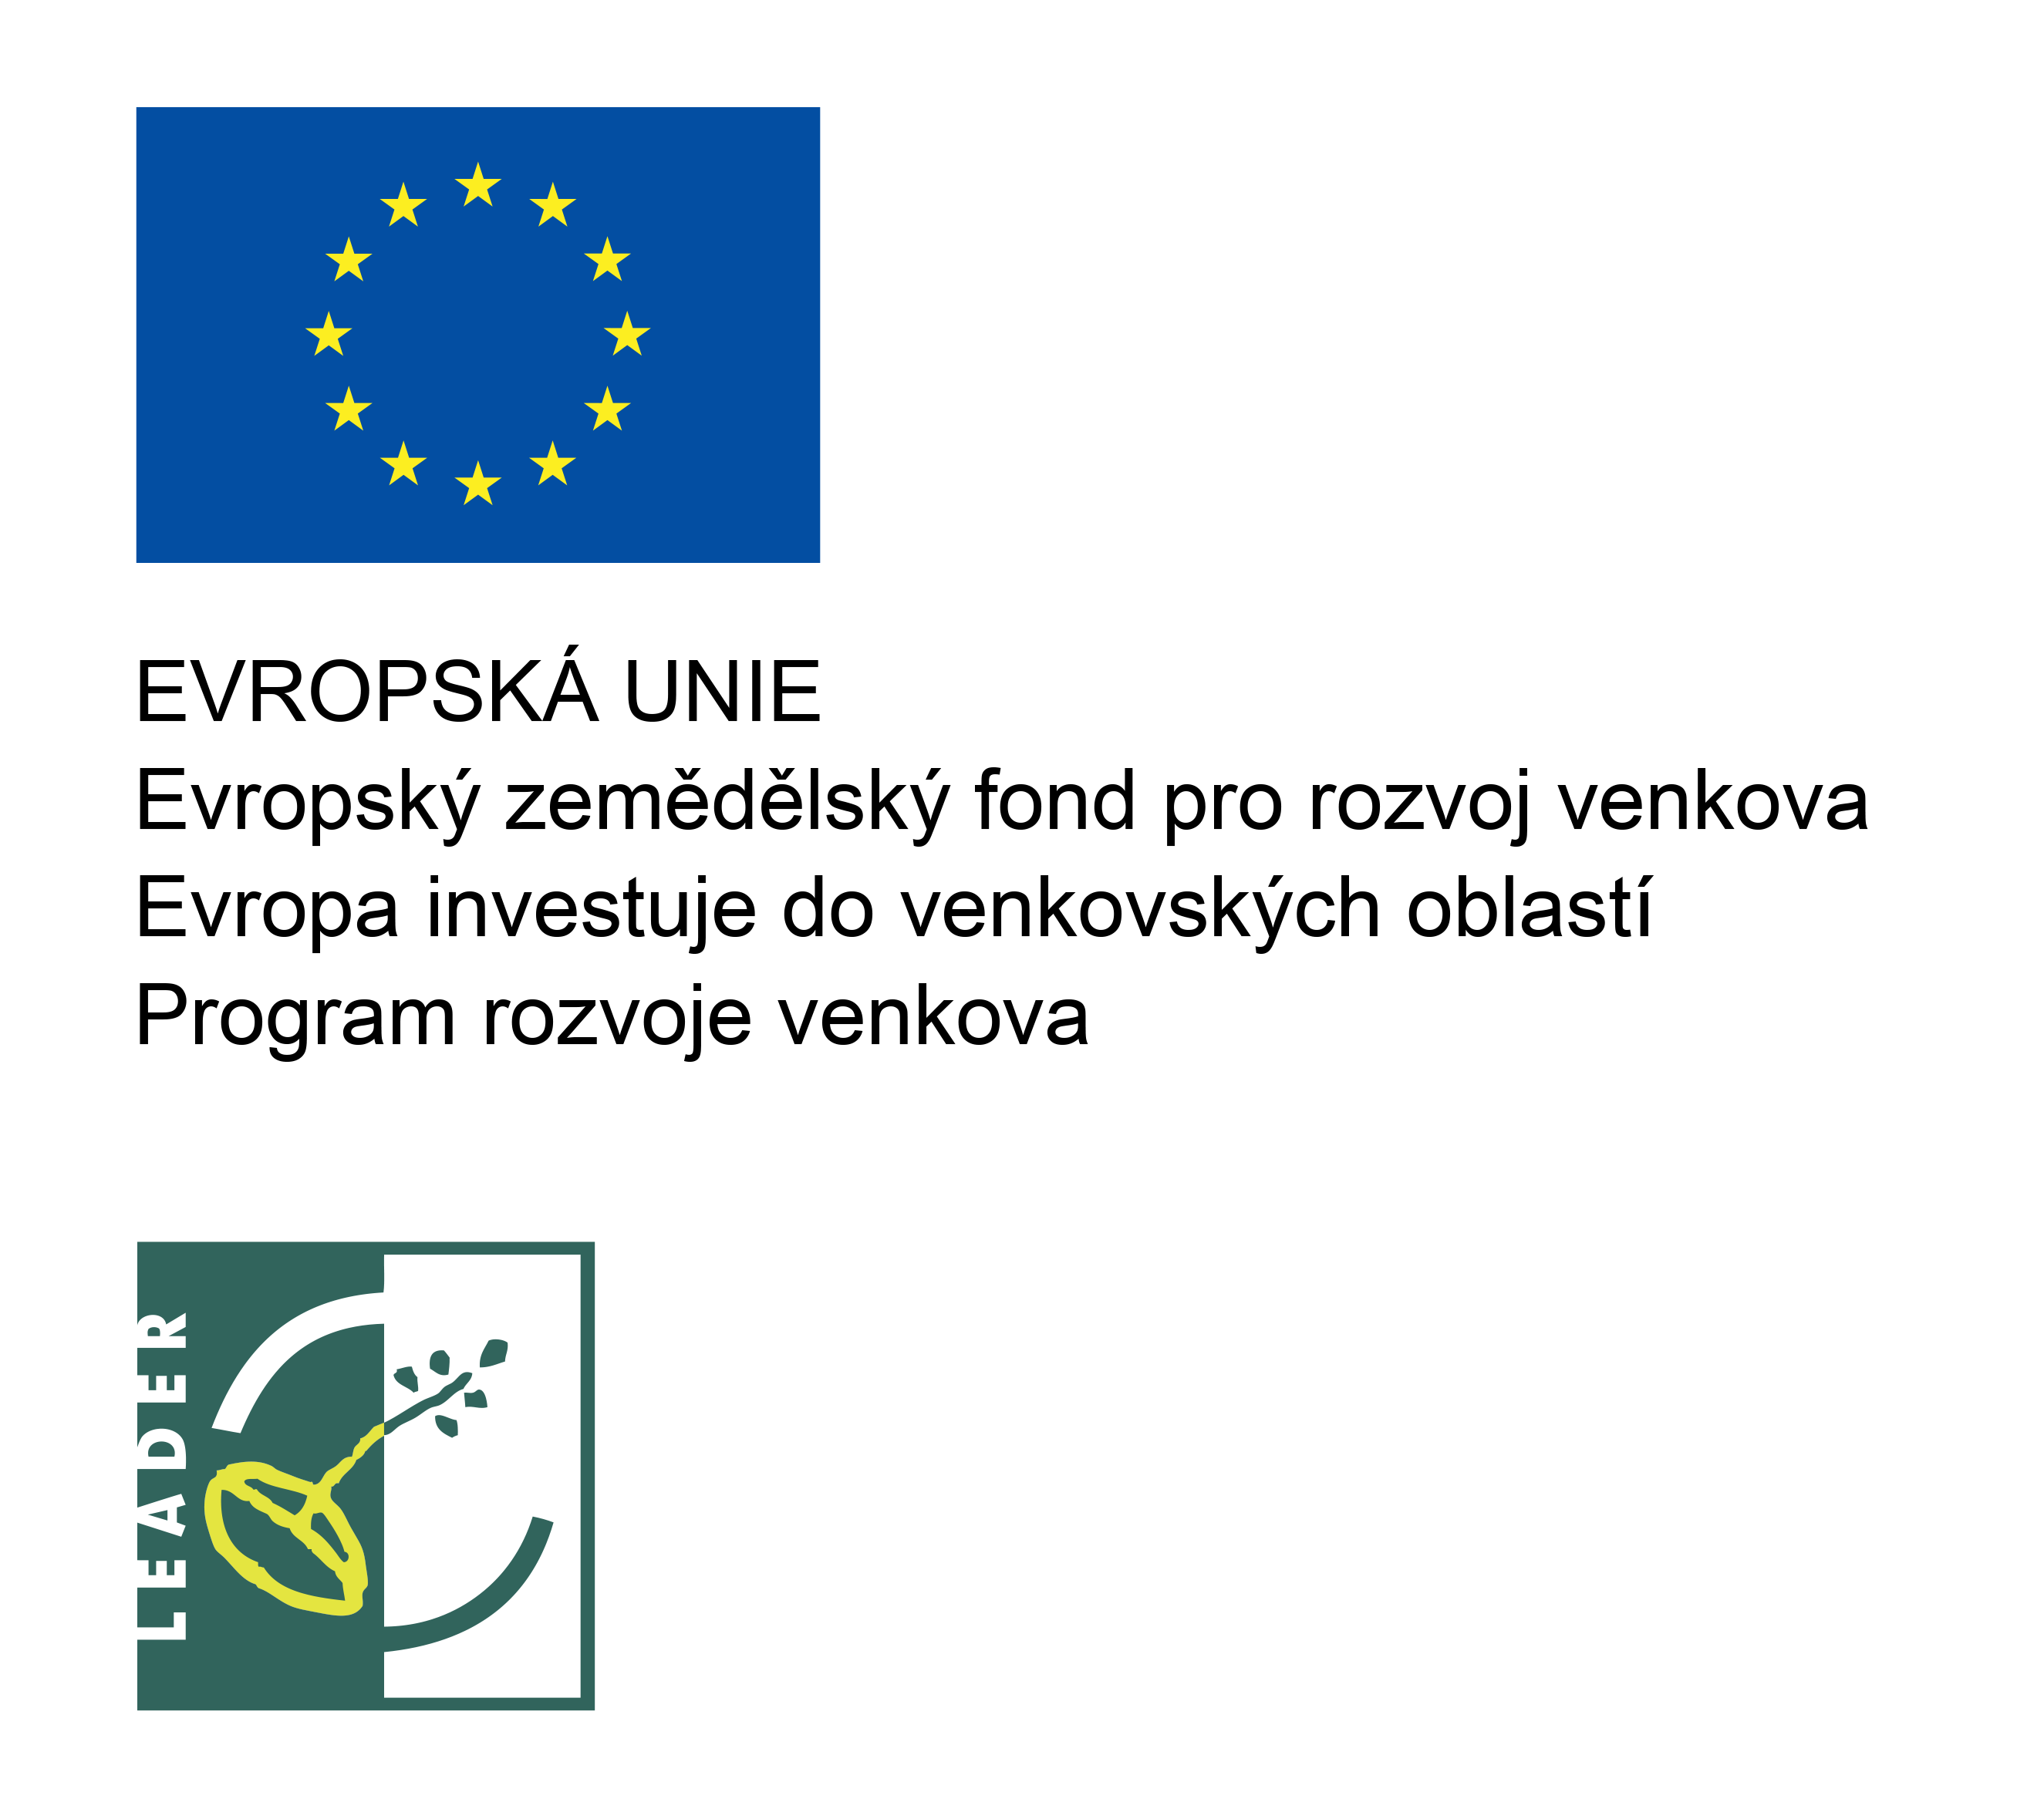 Projekt MODERNIZACE PODNIKU - BAŽANT INTERIER S.R.O. byl spolufinancován Evropskou unií.